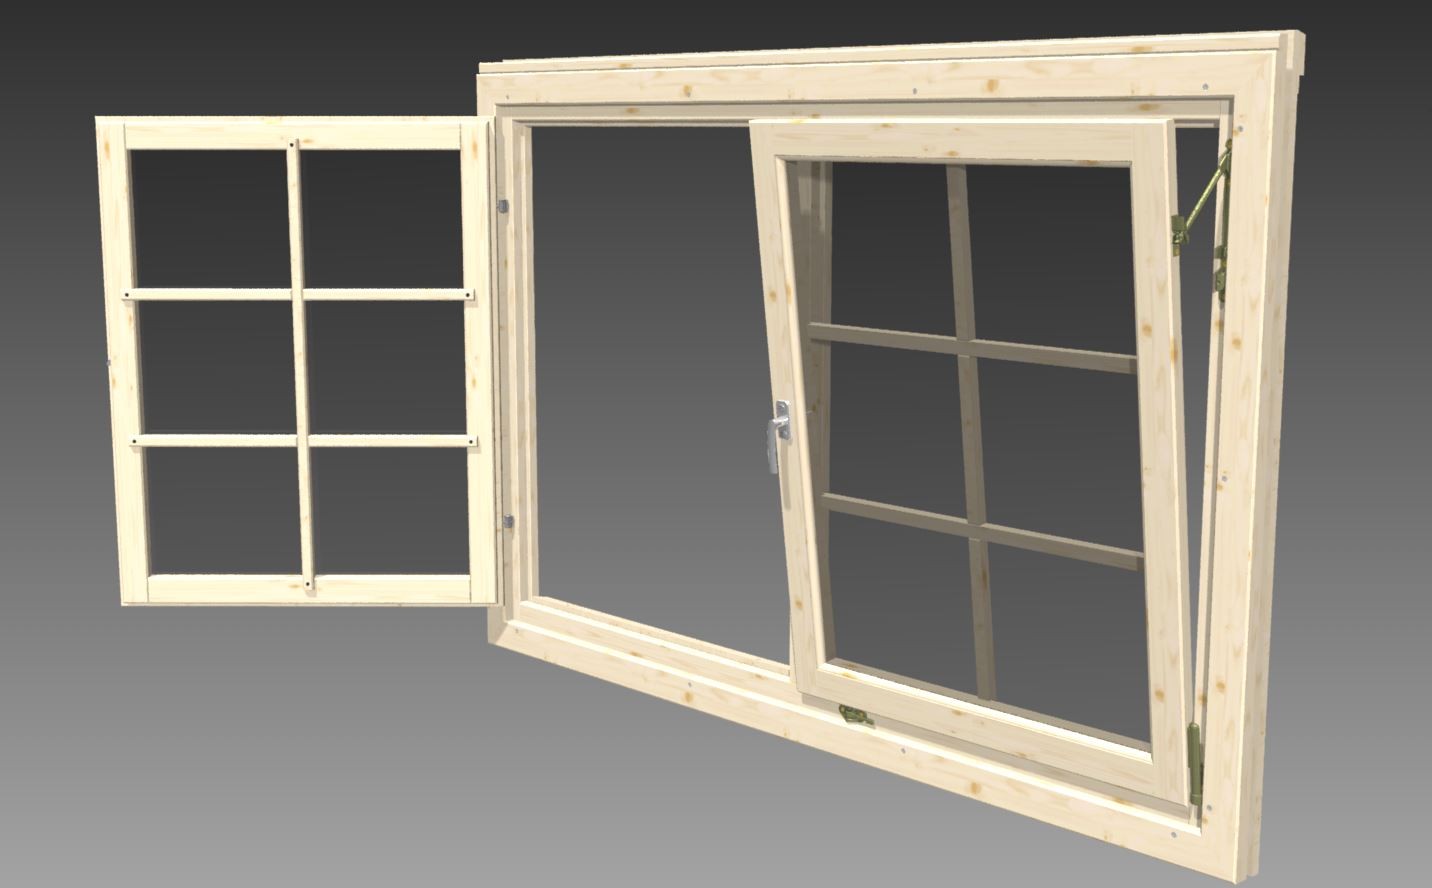 Garage aus Holz Garage-L-70 (L-Form) 70mm Holz, 5,20x5,70m inkl. Holz-Garagentor, Doppelfenster und Tür mit Doppel-, Isolierverg